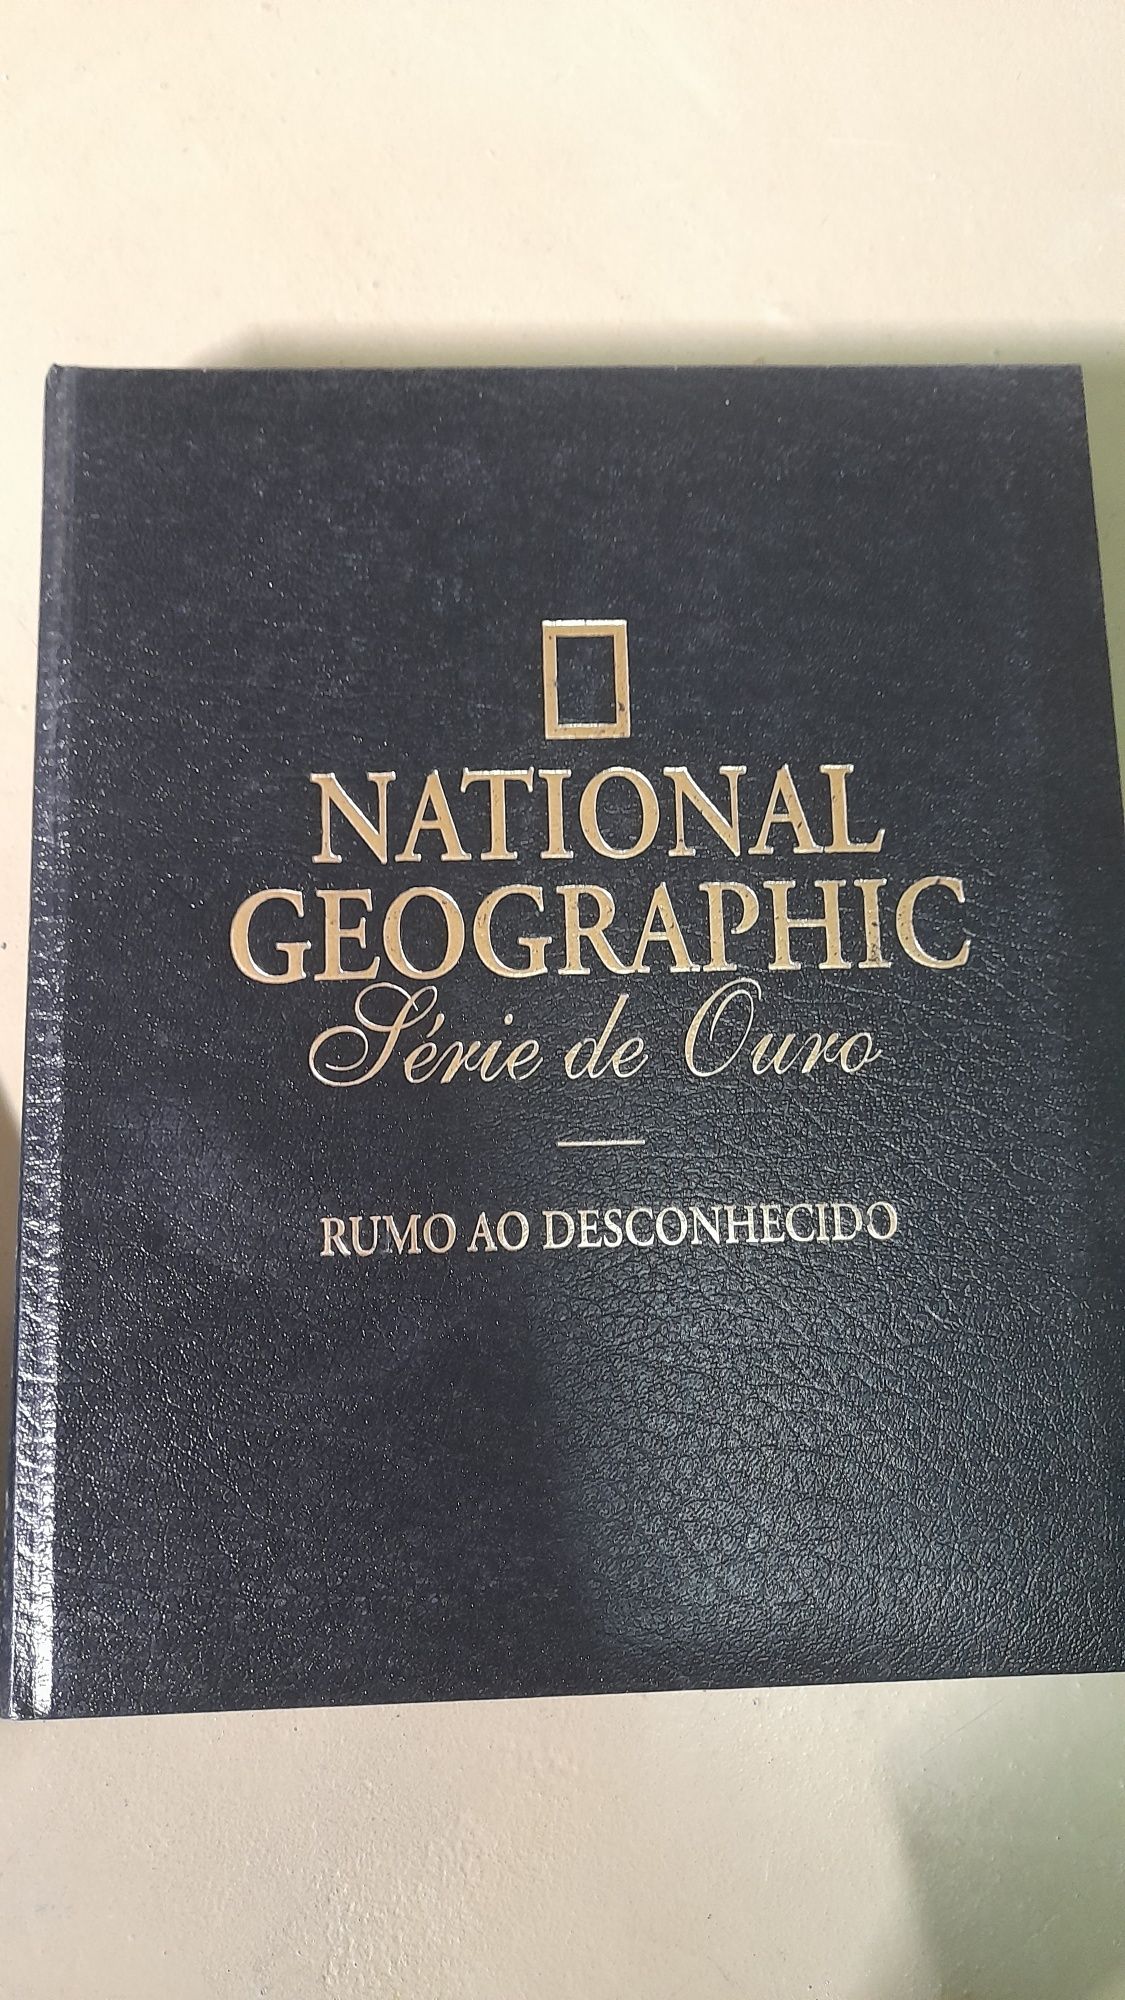 Coleção Série de Ouro da National Geographic